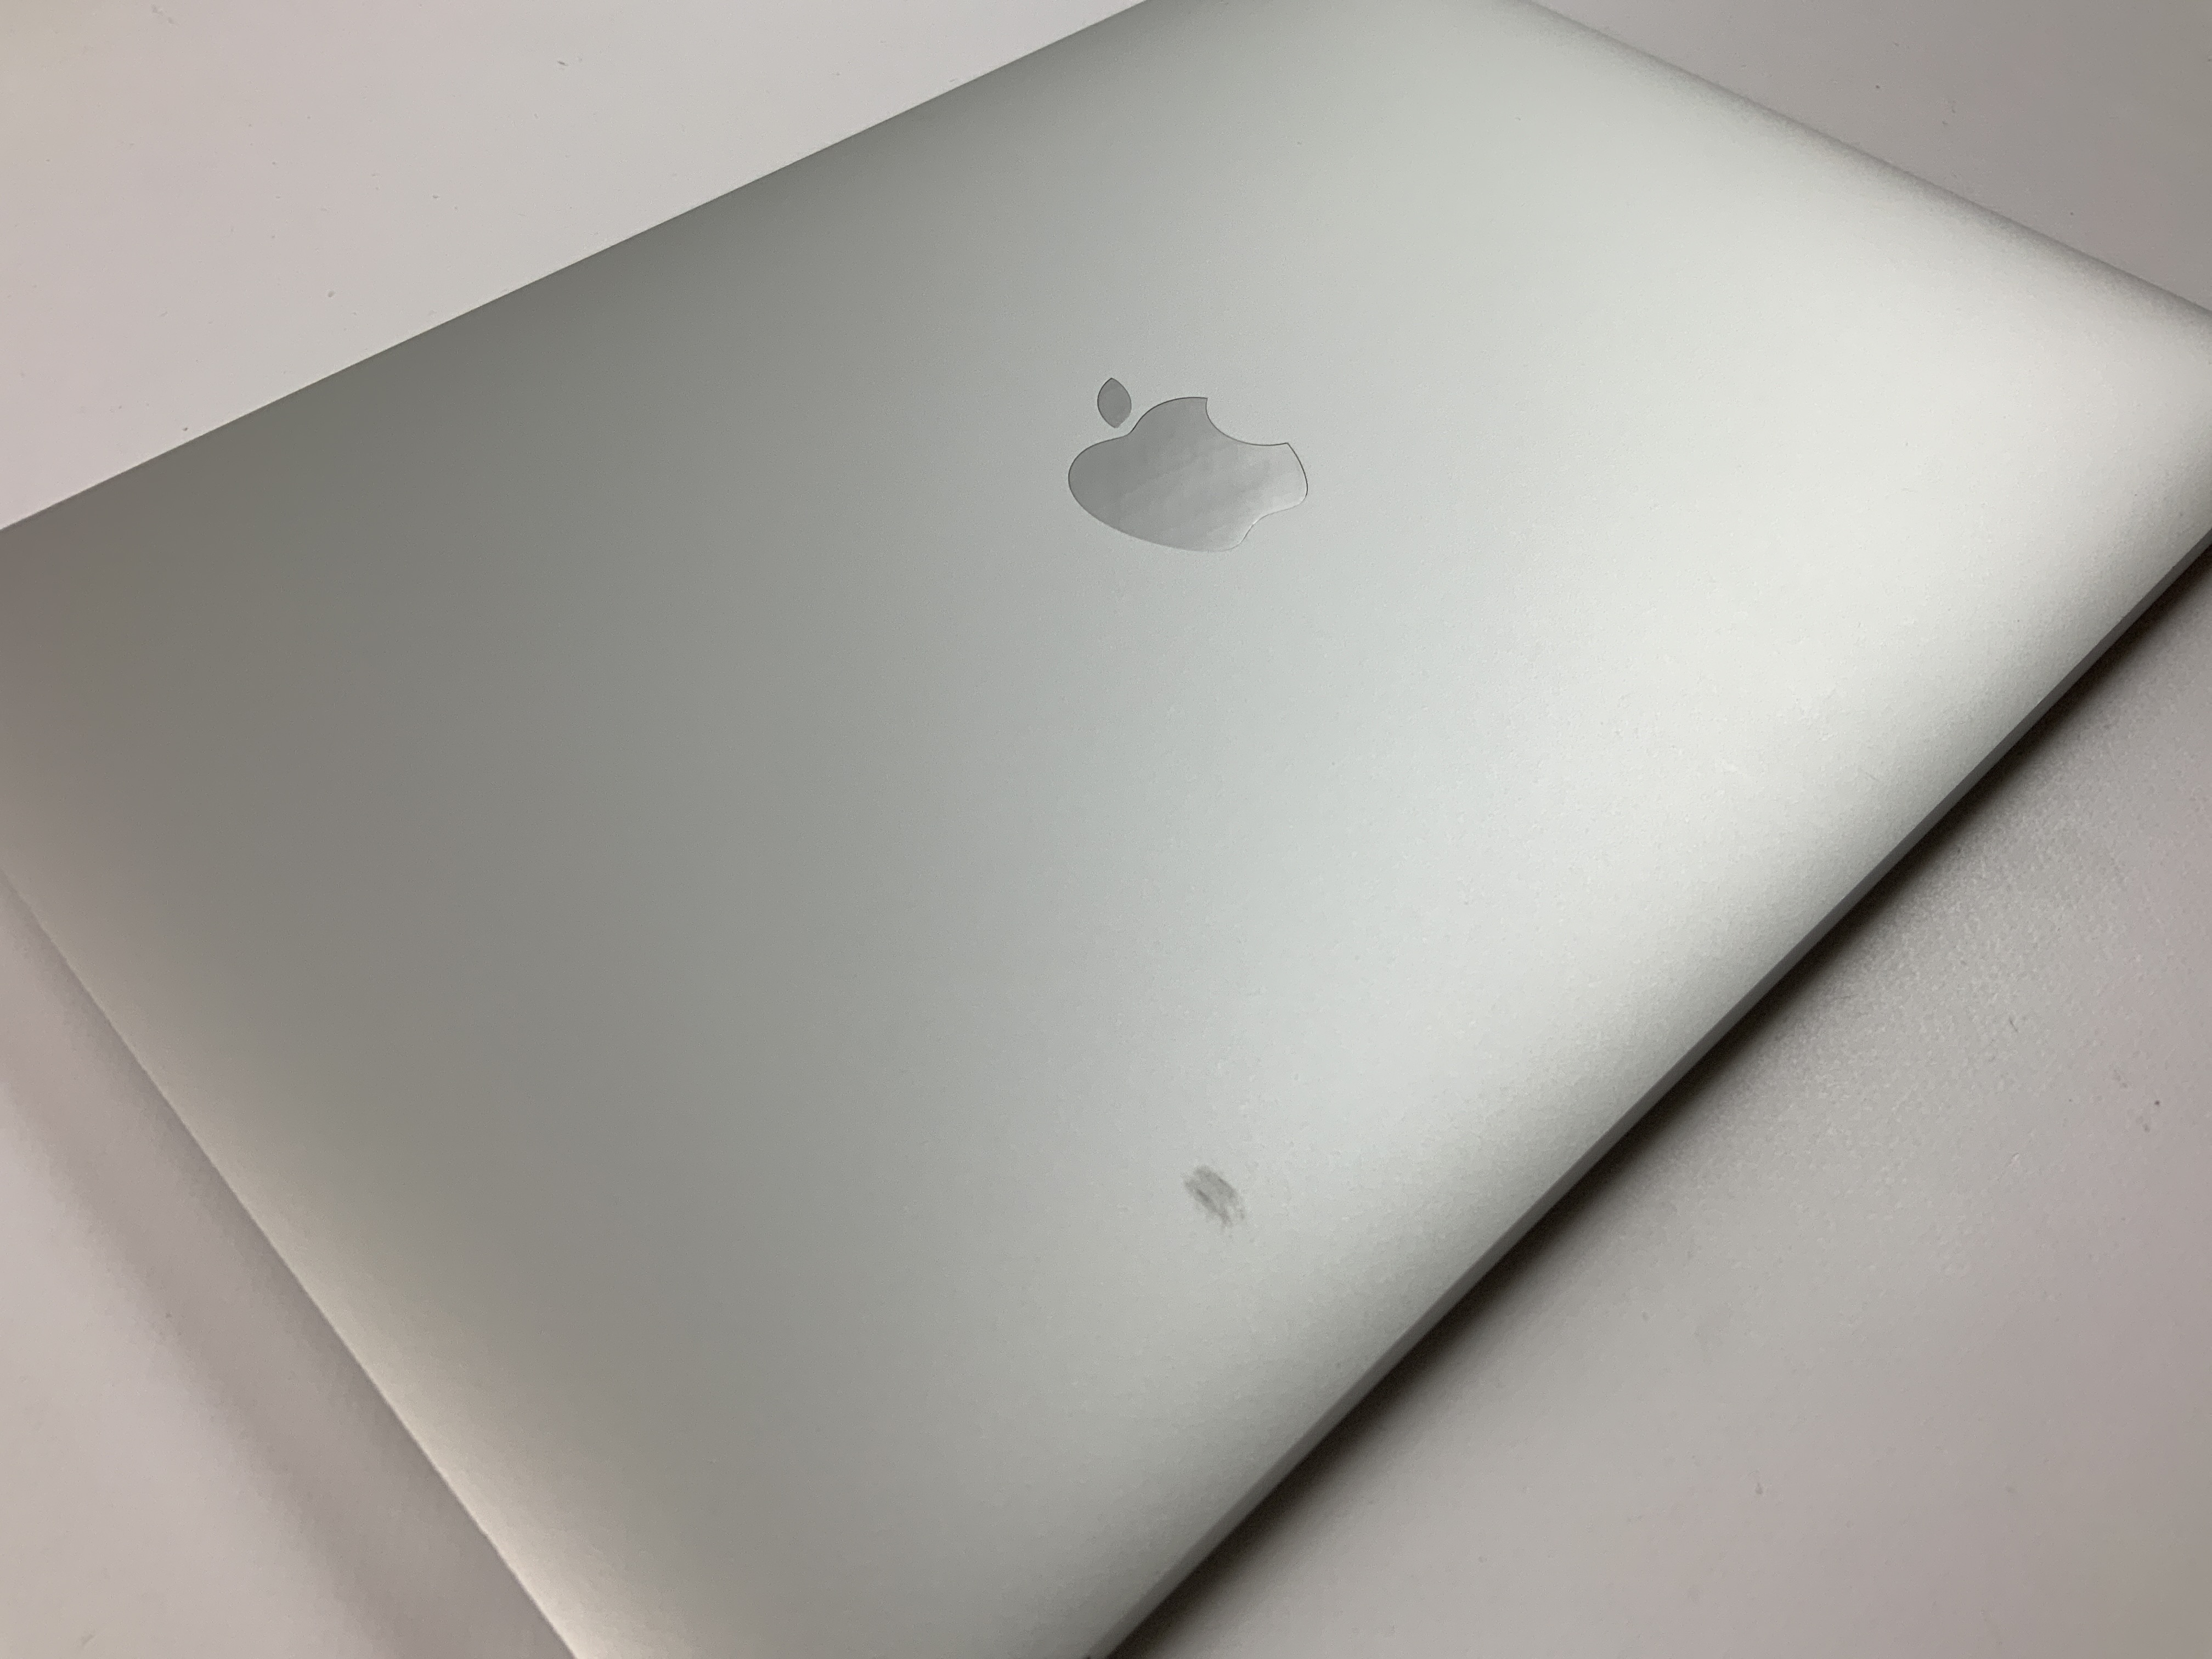 MacBook Pro 13" 4TBT Mid 2019 (Intel Quad-Core i5 2.4 GHz 16 GB RAM 256 GB SSD), Silver, Intel Quad-Core i5 2.4 GHz, 16 GB RAM, 256 GB SSD, Bild 5